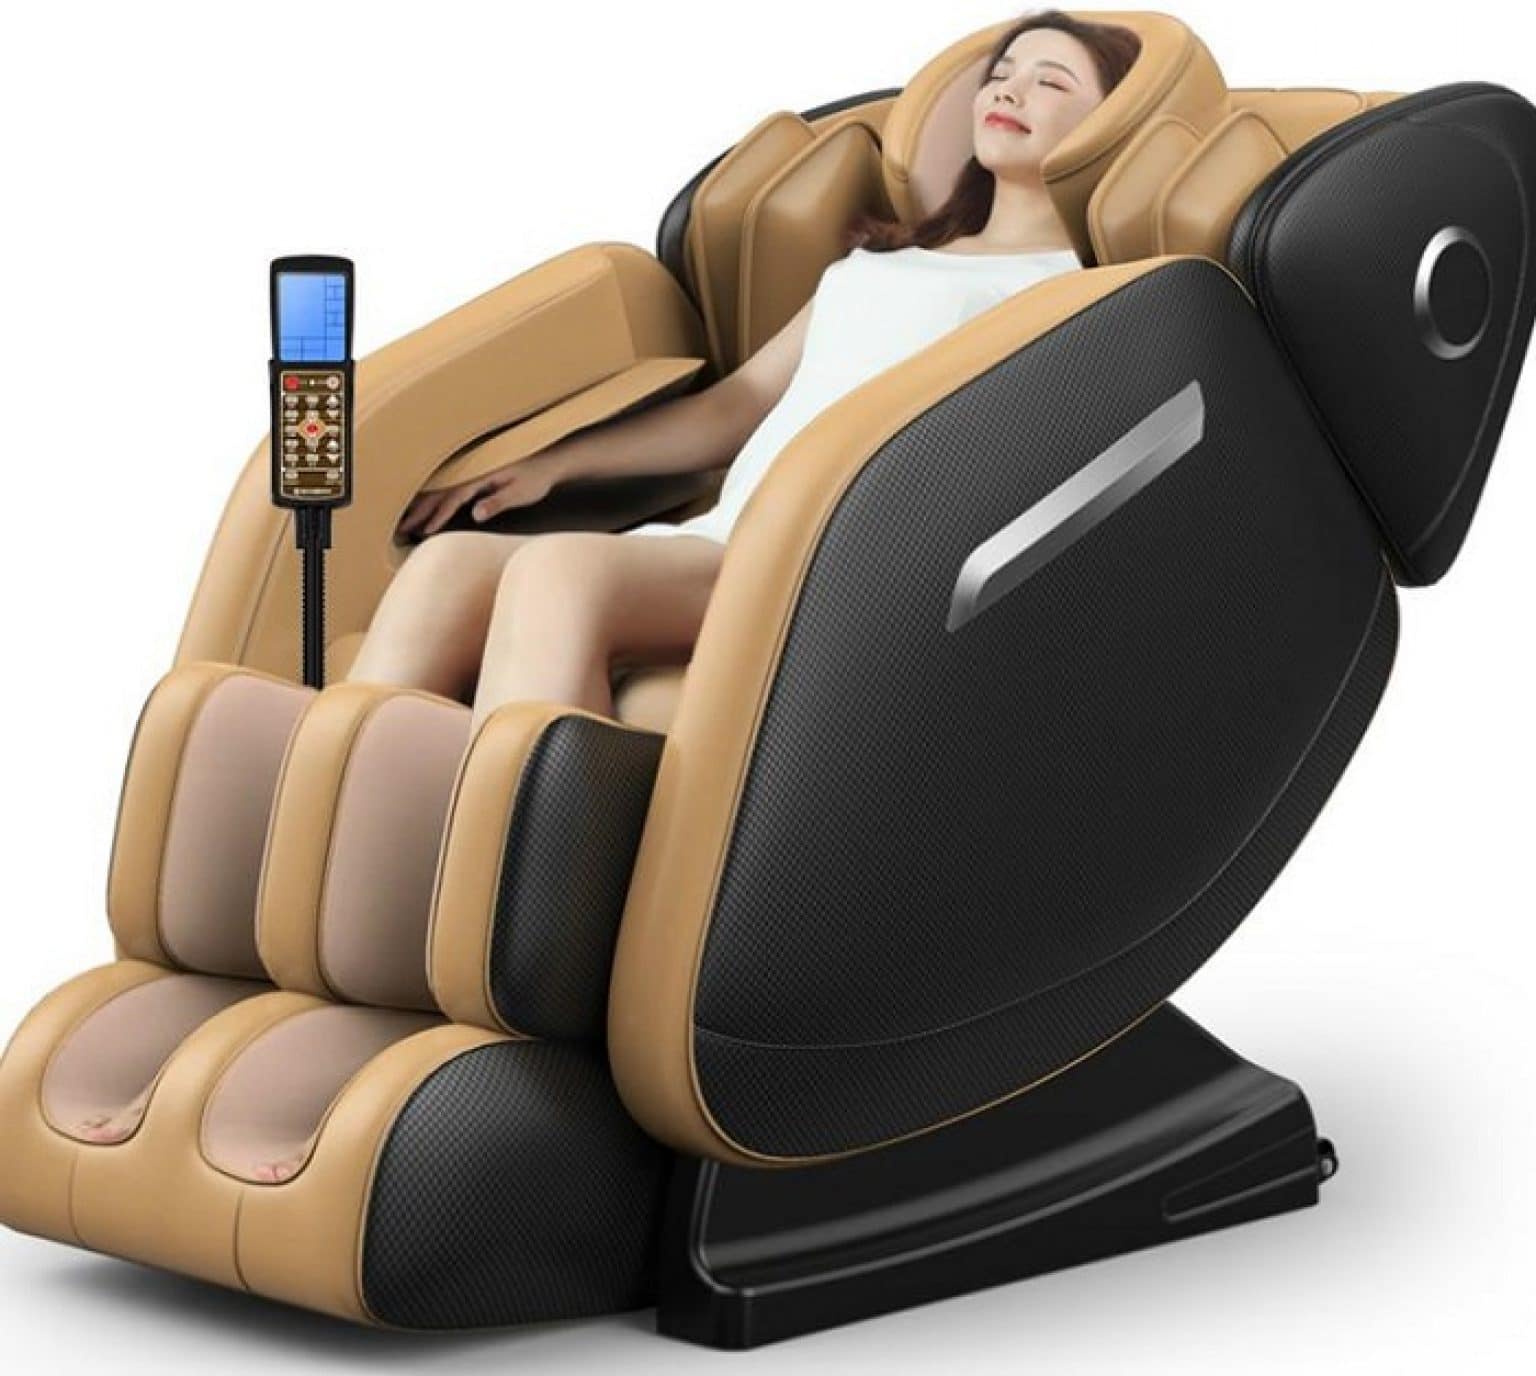 Osaki OS-4000CS Massage Chair Review - Best Brands HQ